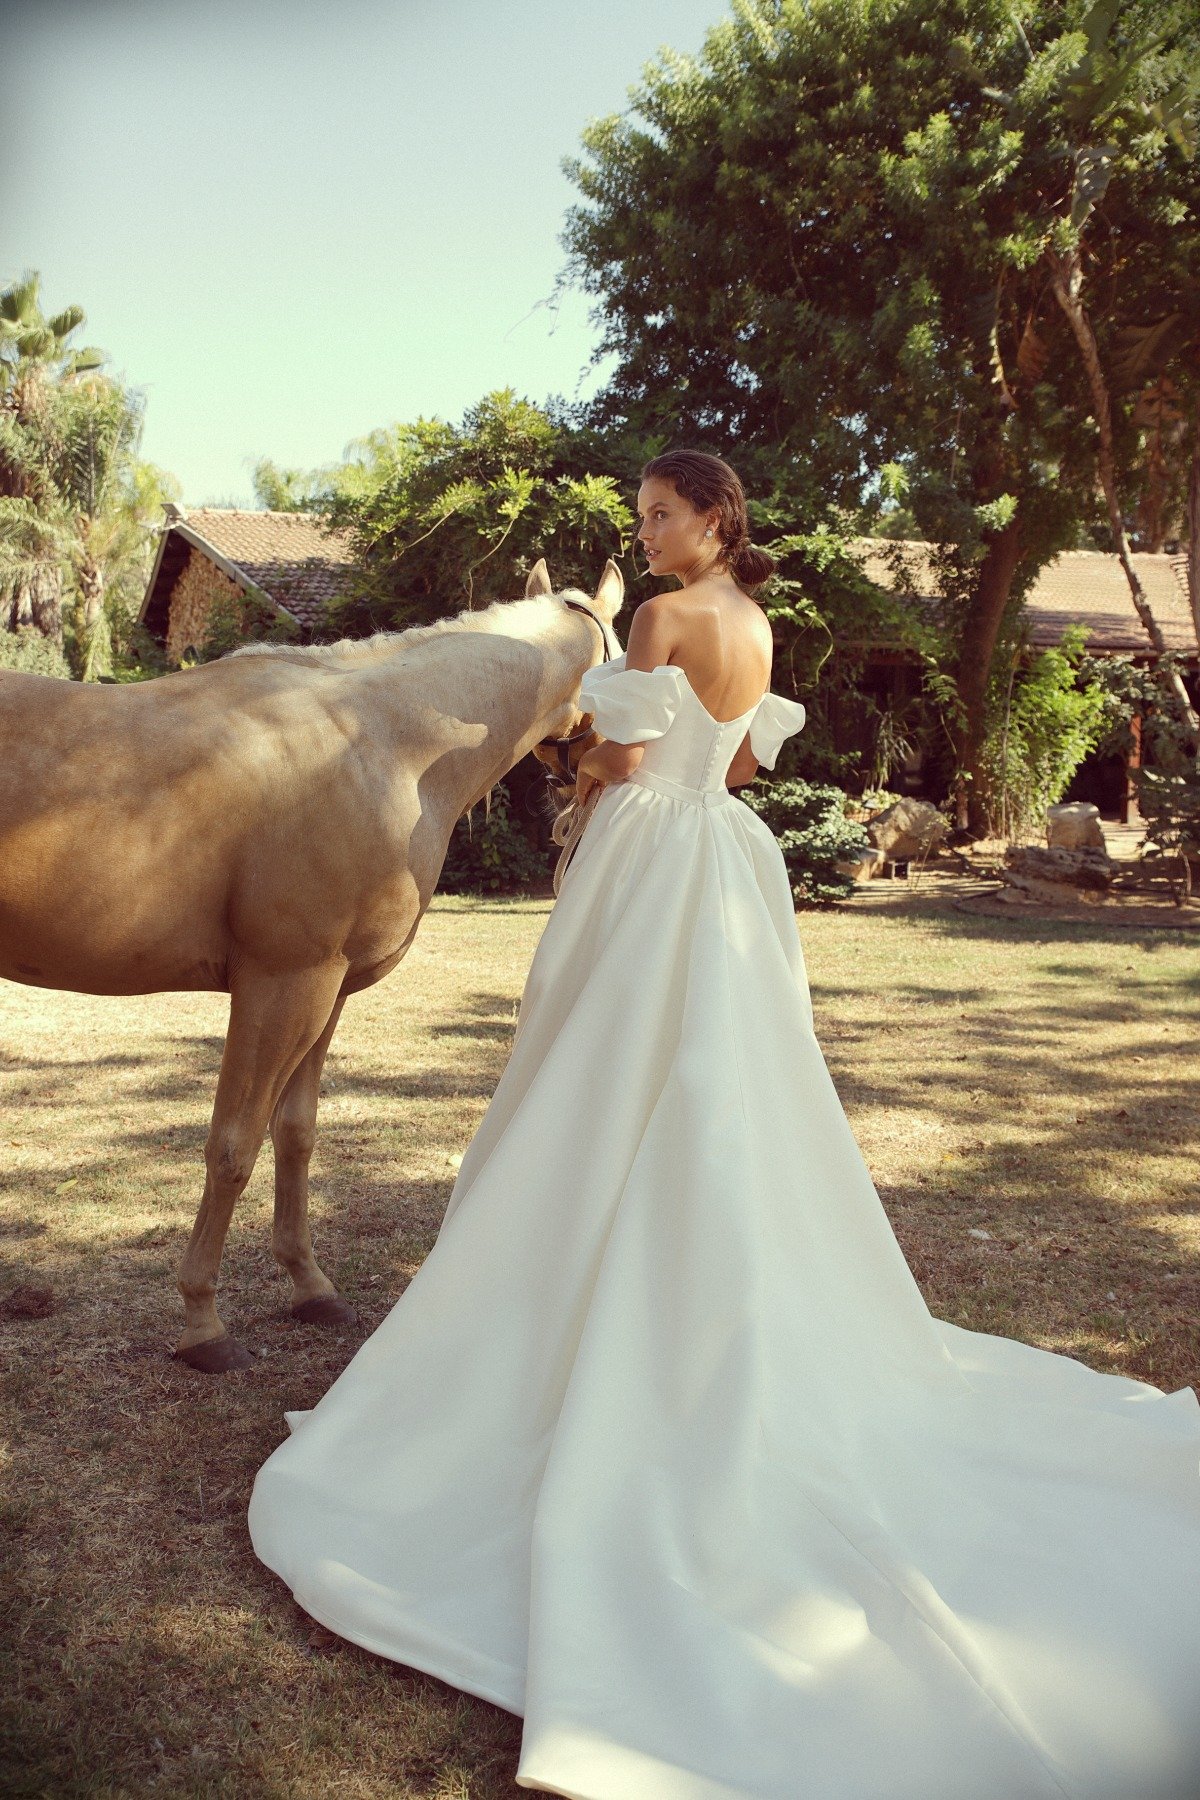 nicole overskirt wedding gown by Lihi Hod